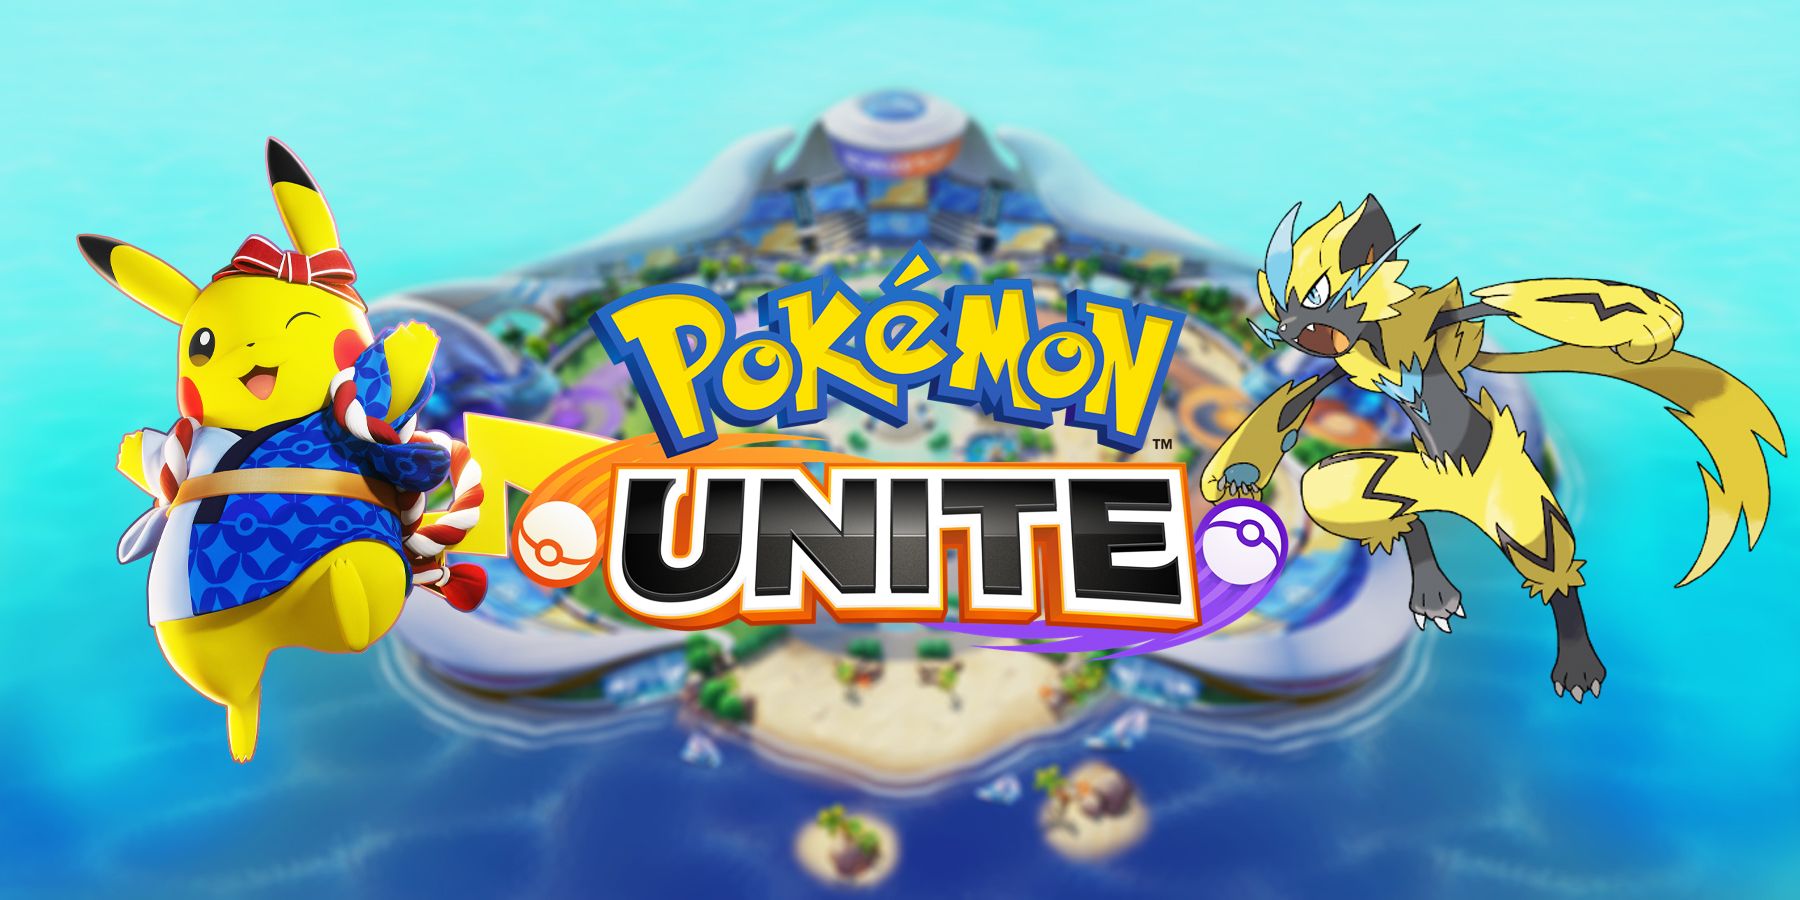 الآن هو وقت رائع لبدء لعب Pokemon Unite